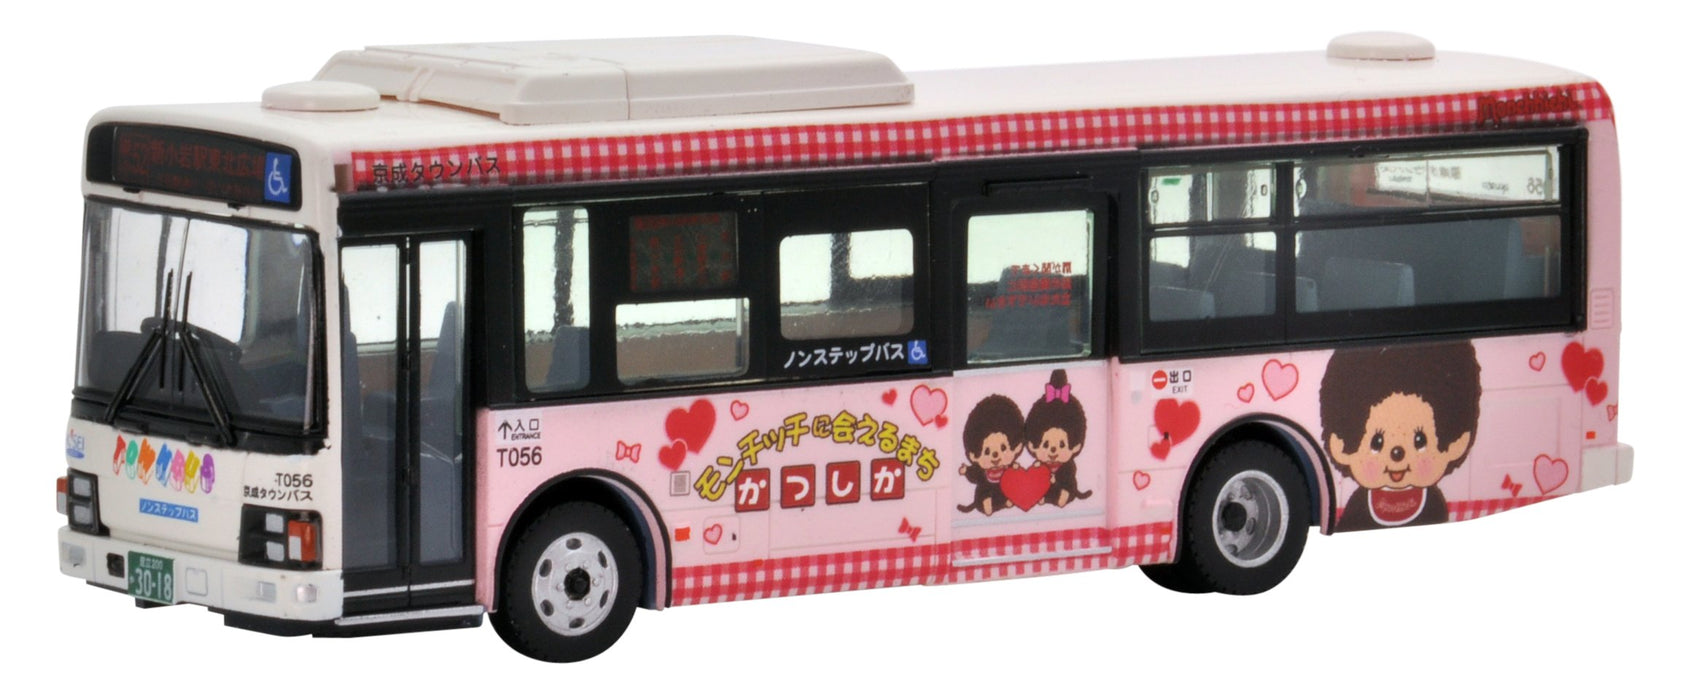 Tomytec National Bus Collection 1/80 Series Jh021 - Keisei Town Katsushika Wrapping Bus